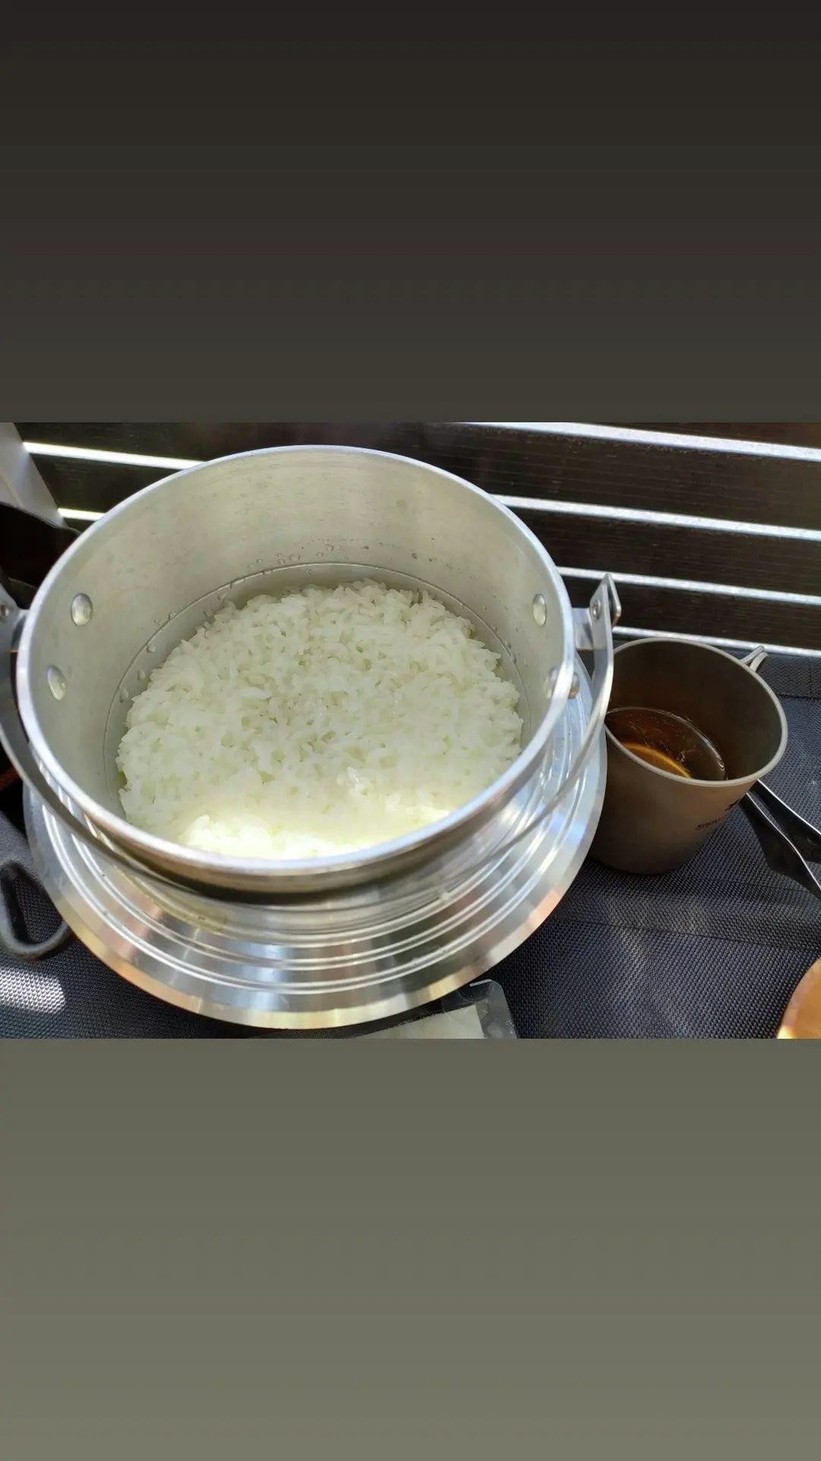 ユニフレーム 羽釜の美味しい炊き方の画像